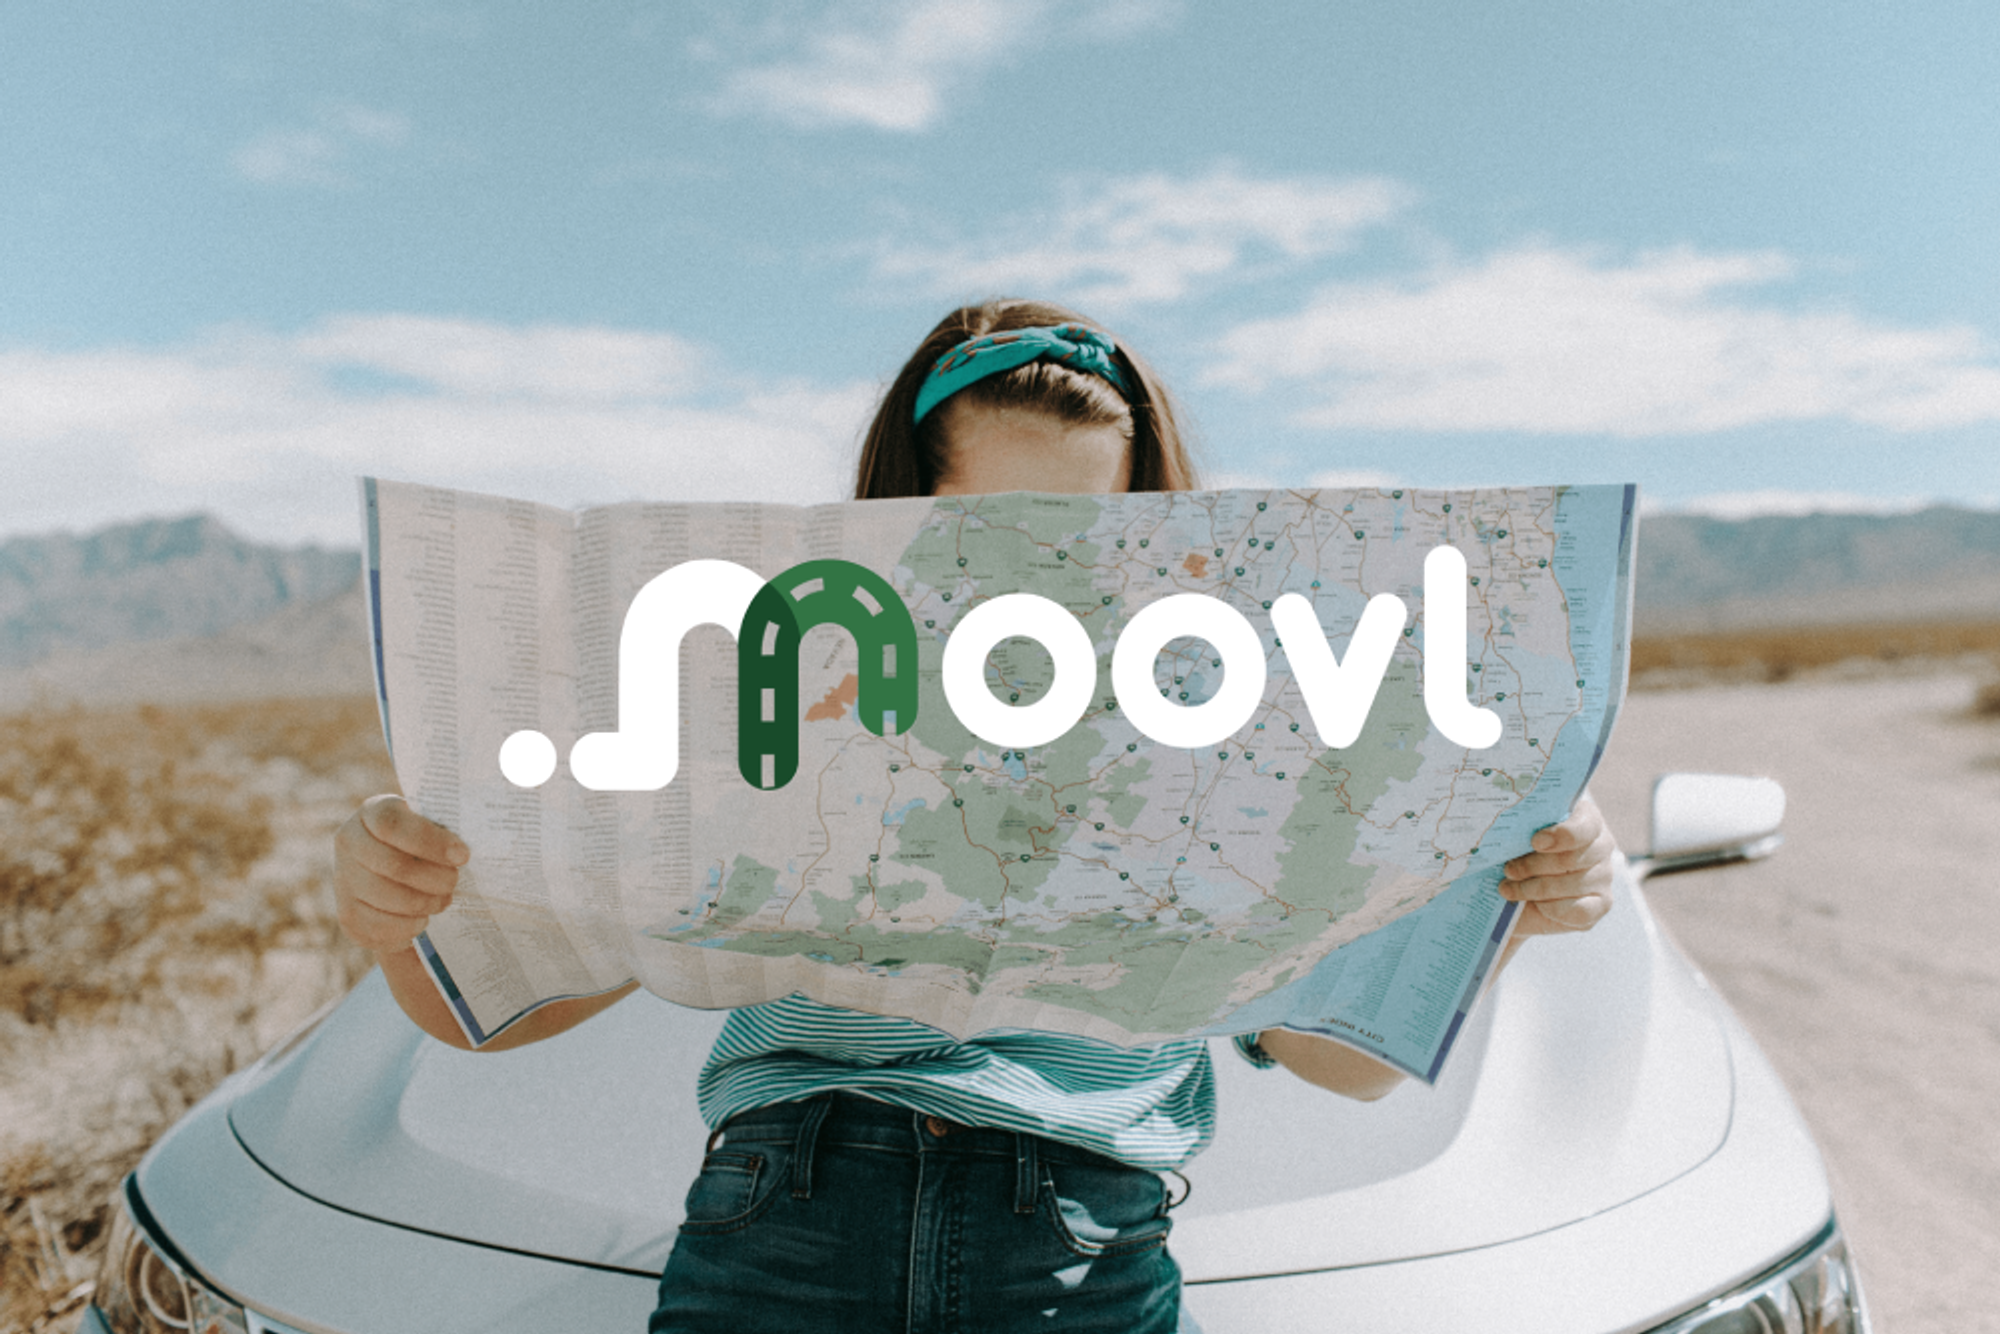 Sydney NSW to Jindabyne NSW : Travel by carpool | Moovl